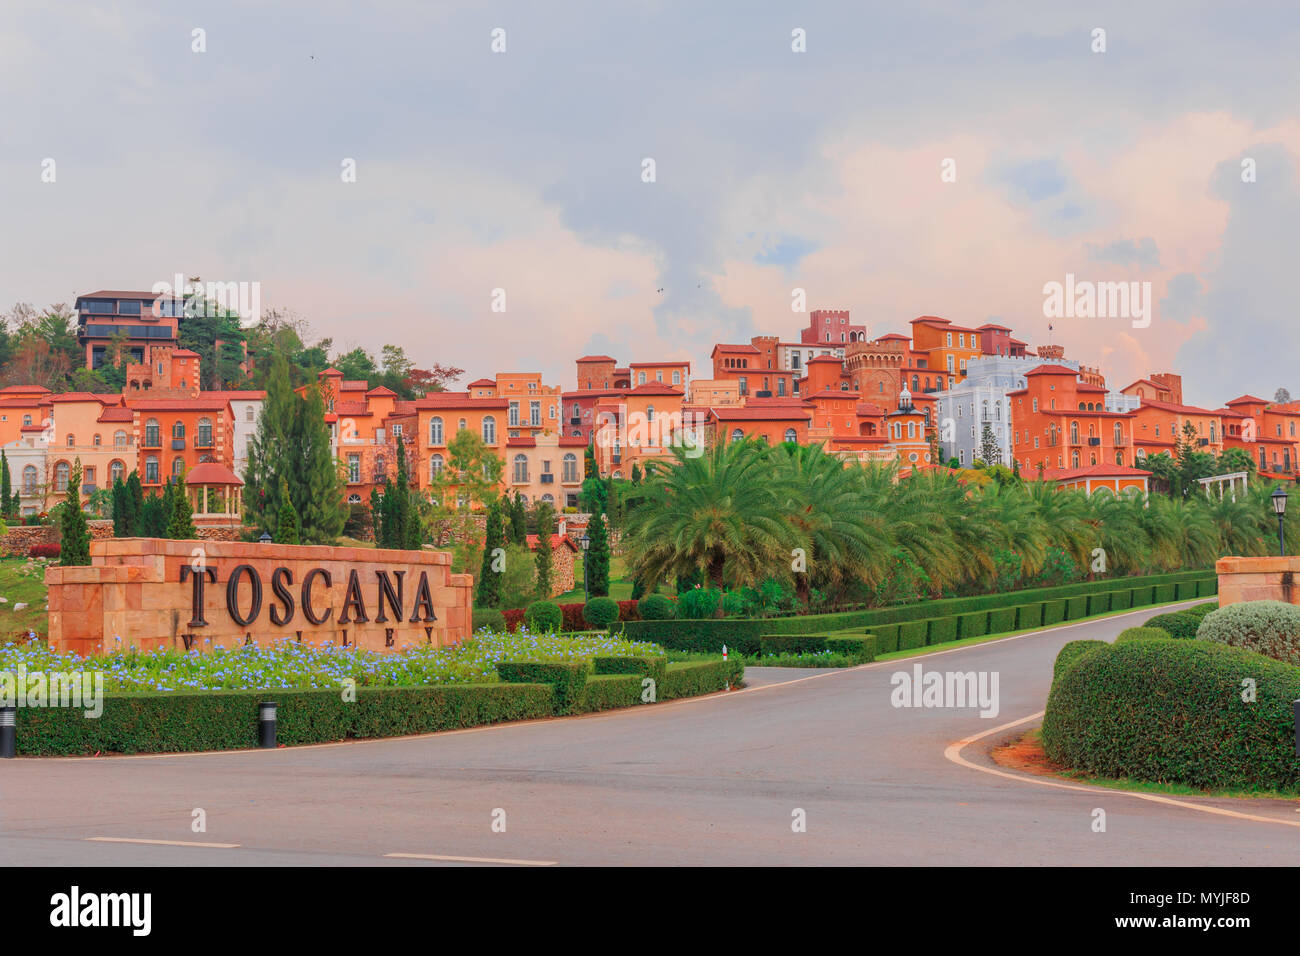 NAKORN RATCHASRIMA - 18 de febrero de 2015 : el modelo de Niza resorts es más popular para los turistas. El clásico estilo italiano están hechas de barro y Orange c Foto de stock